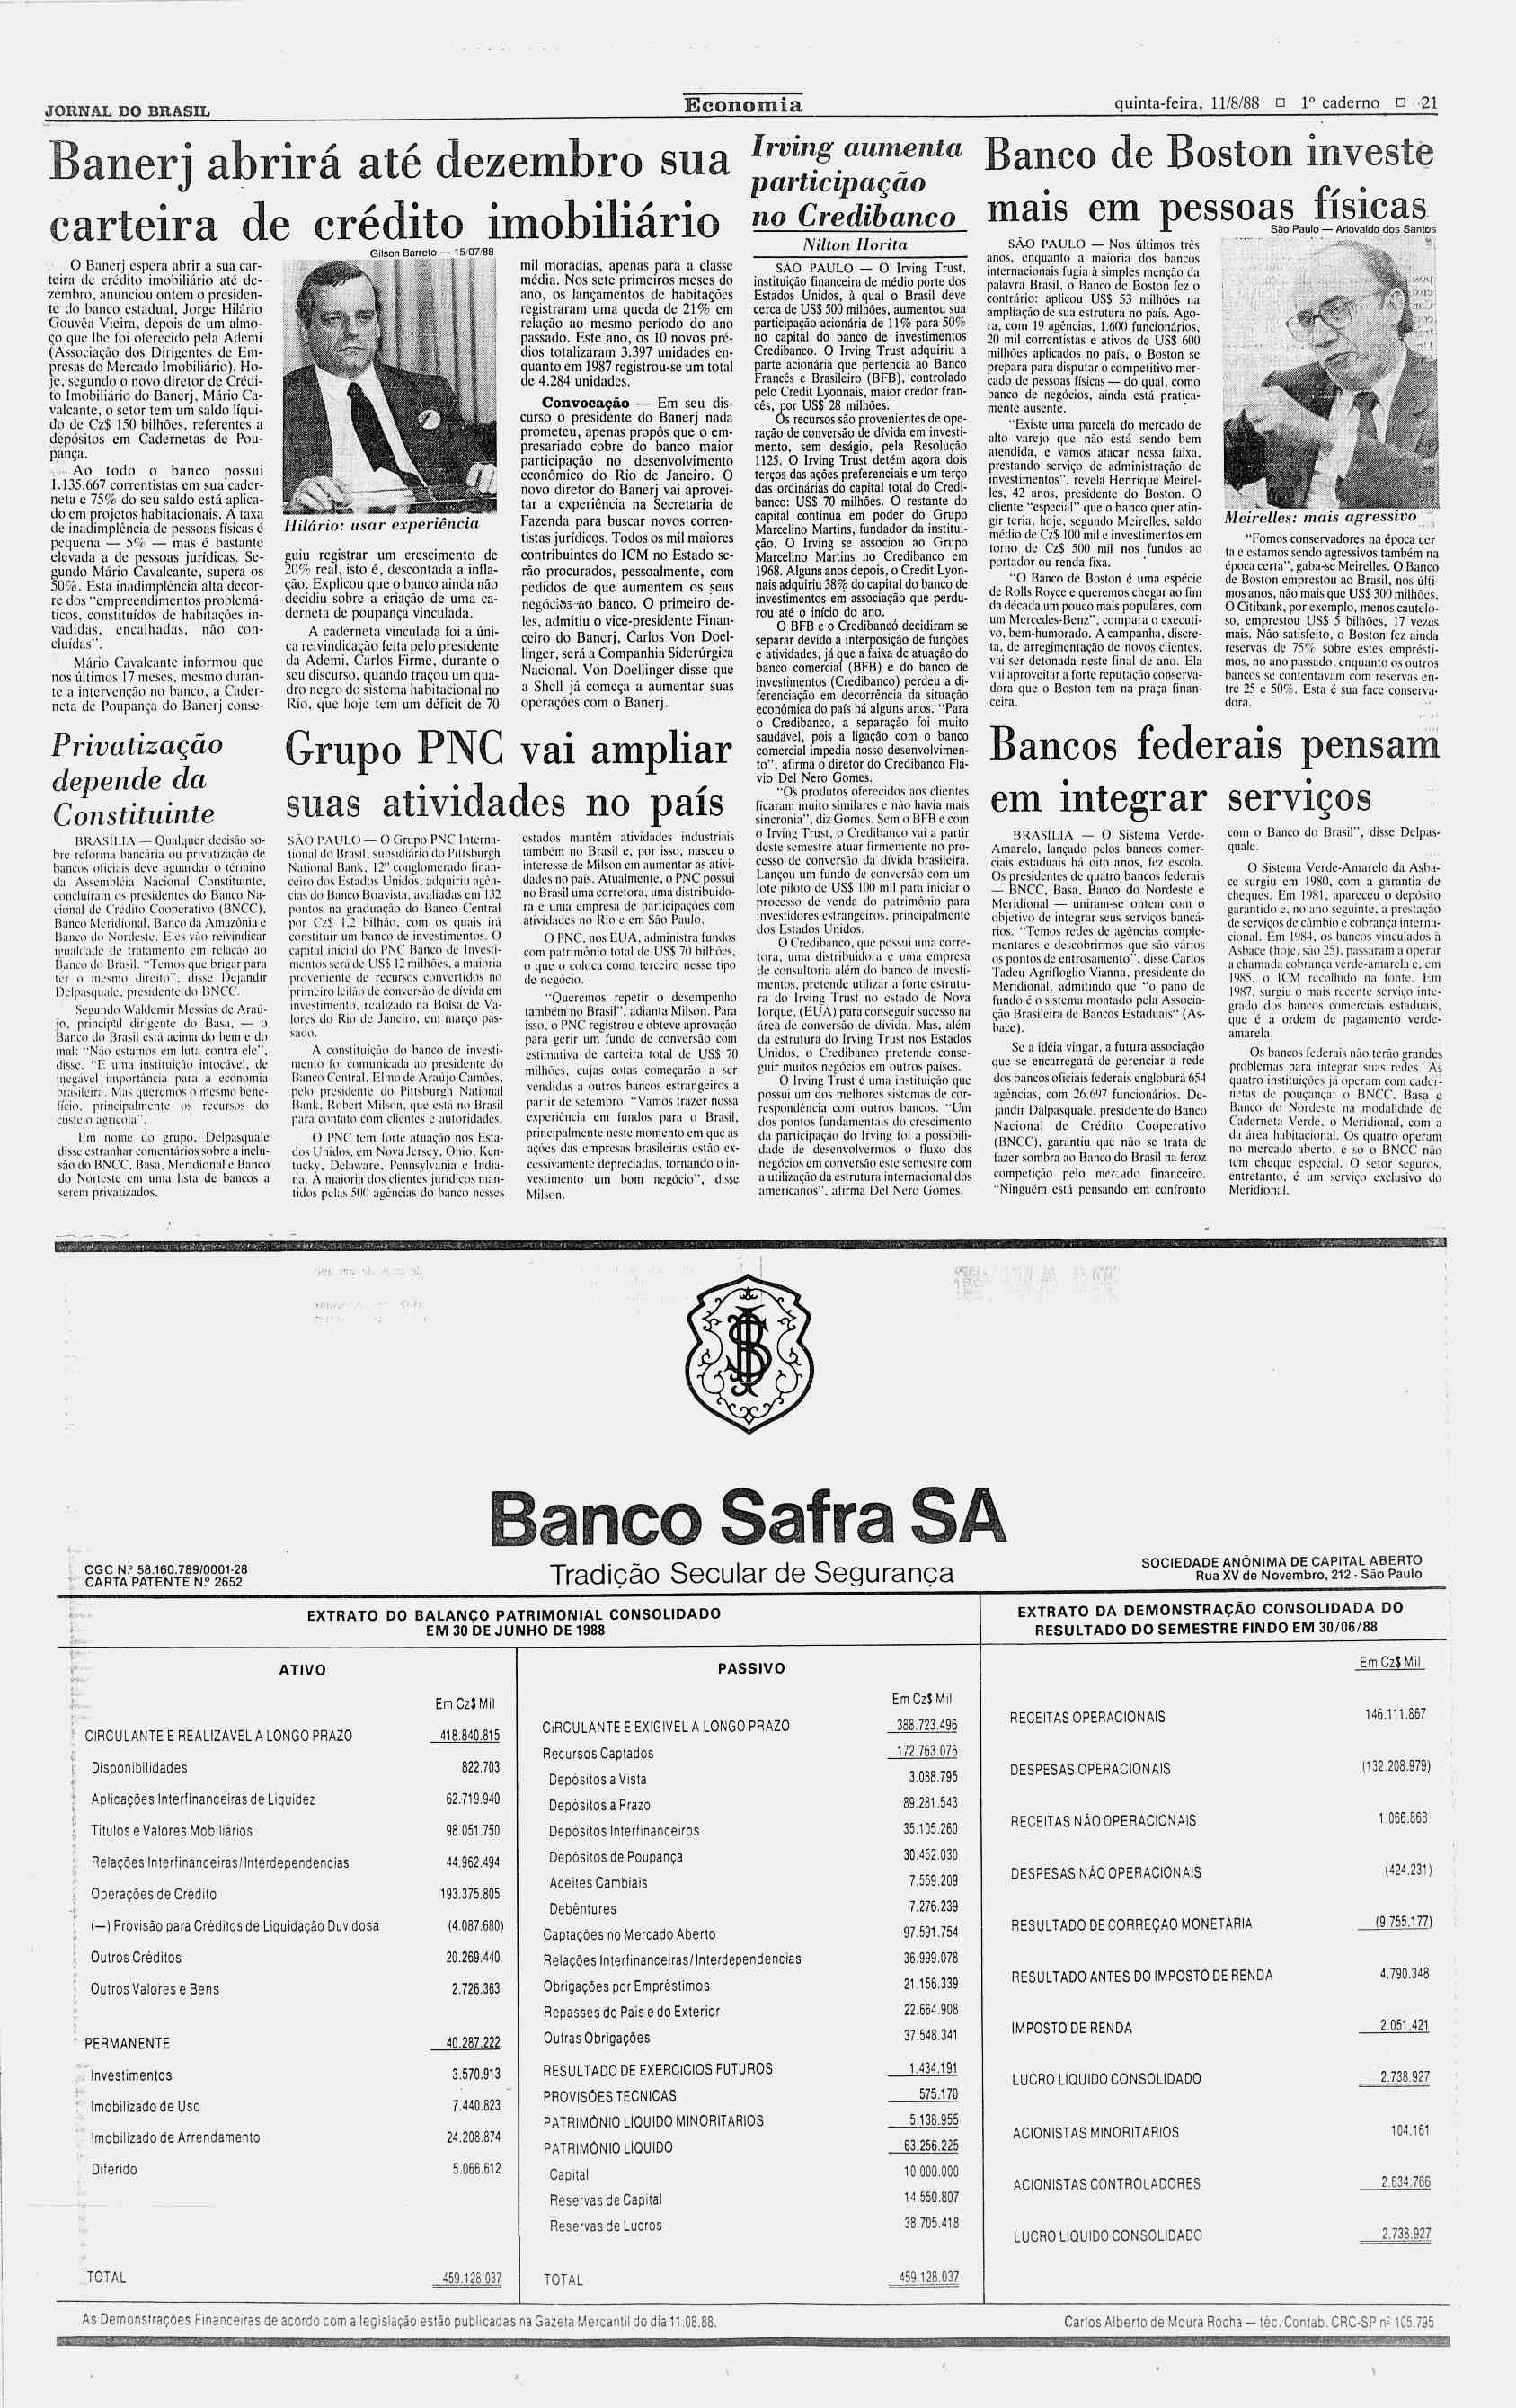 JORNAL DO BRASL Economia quinta-feira, 11/8/88? 1 caderno?